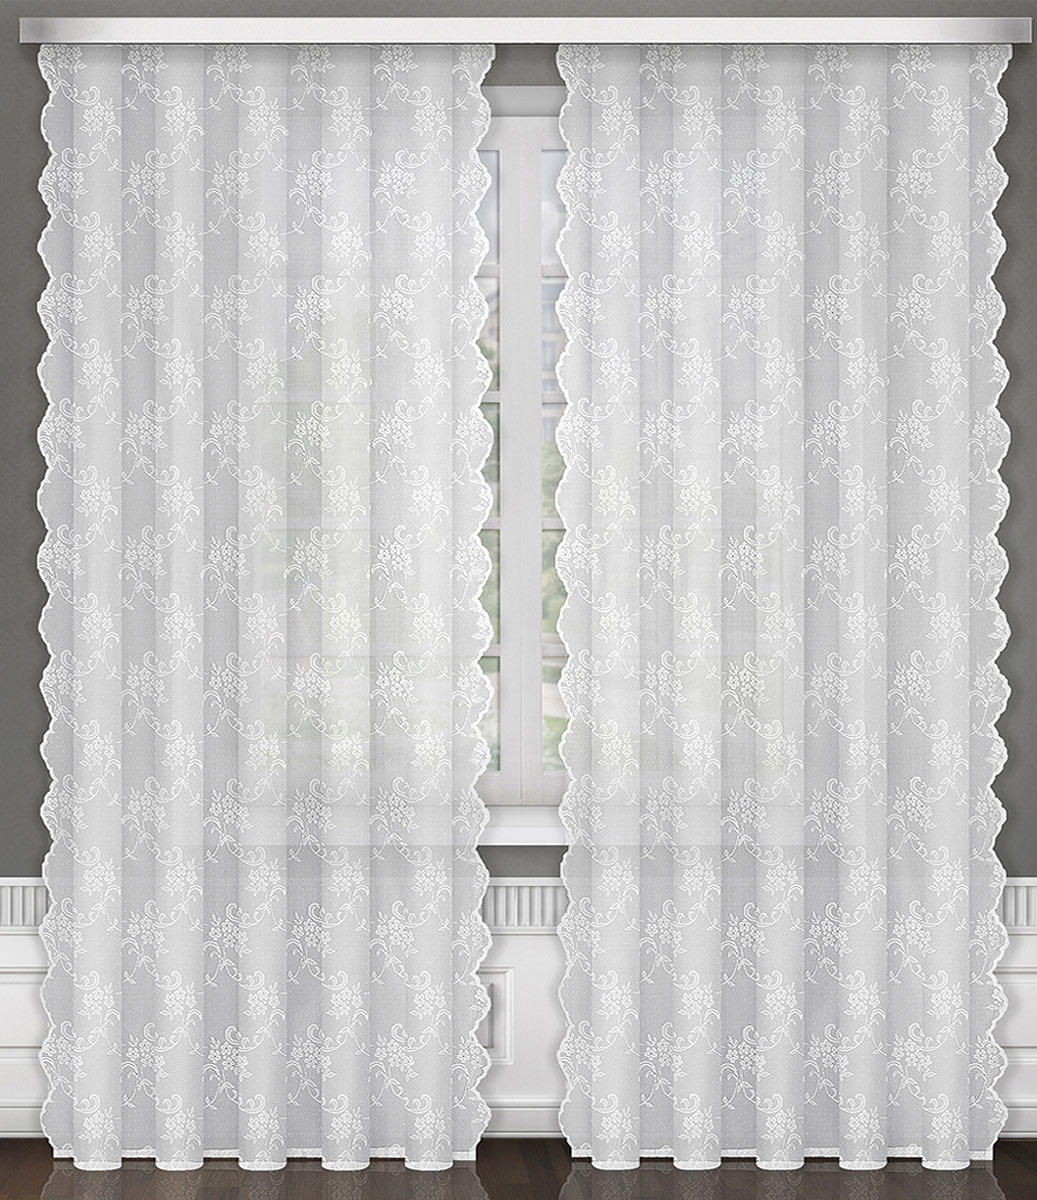 фото Тюль ТД Текстиль "Успех", на ленте, цвет: белый, 150 х 250 см, 1 шт